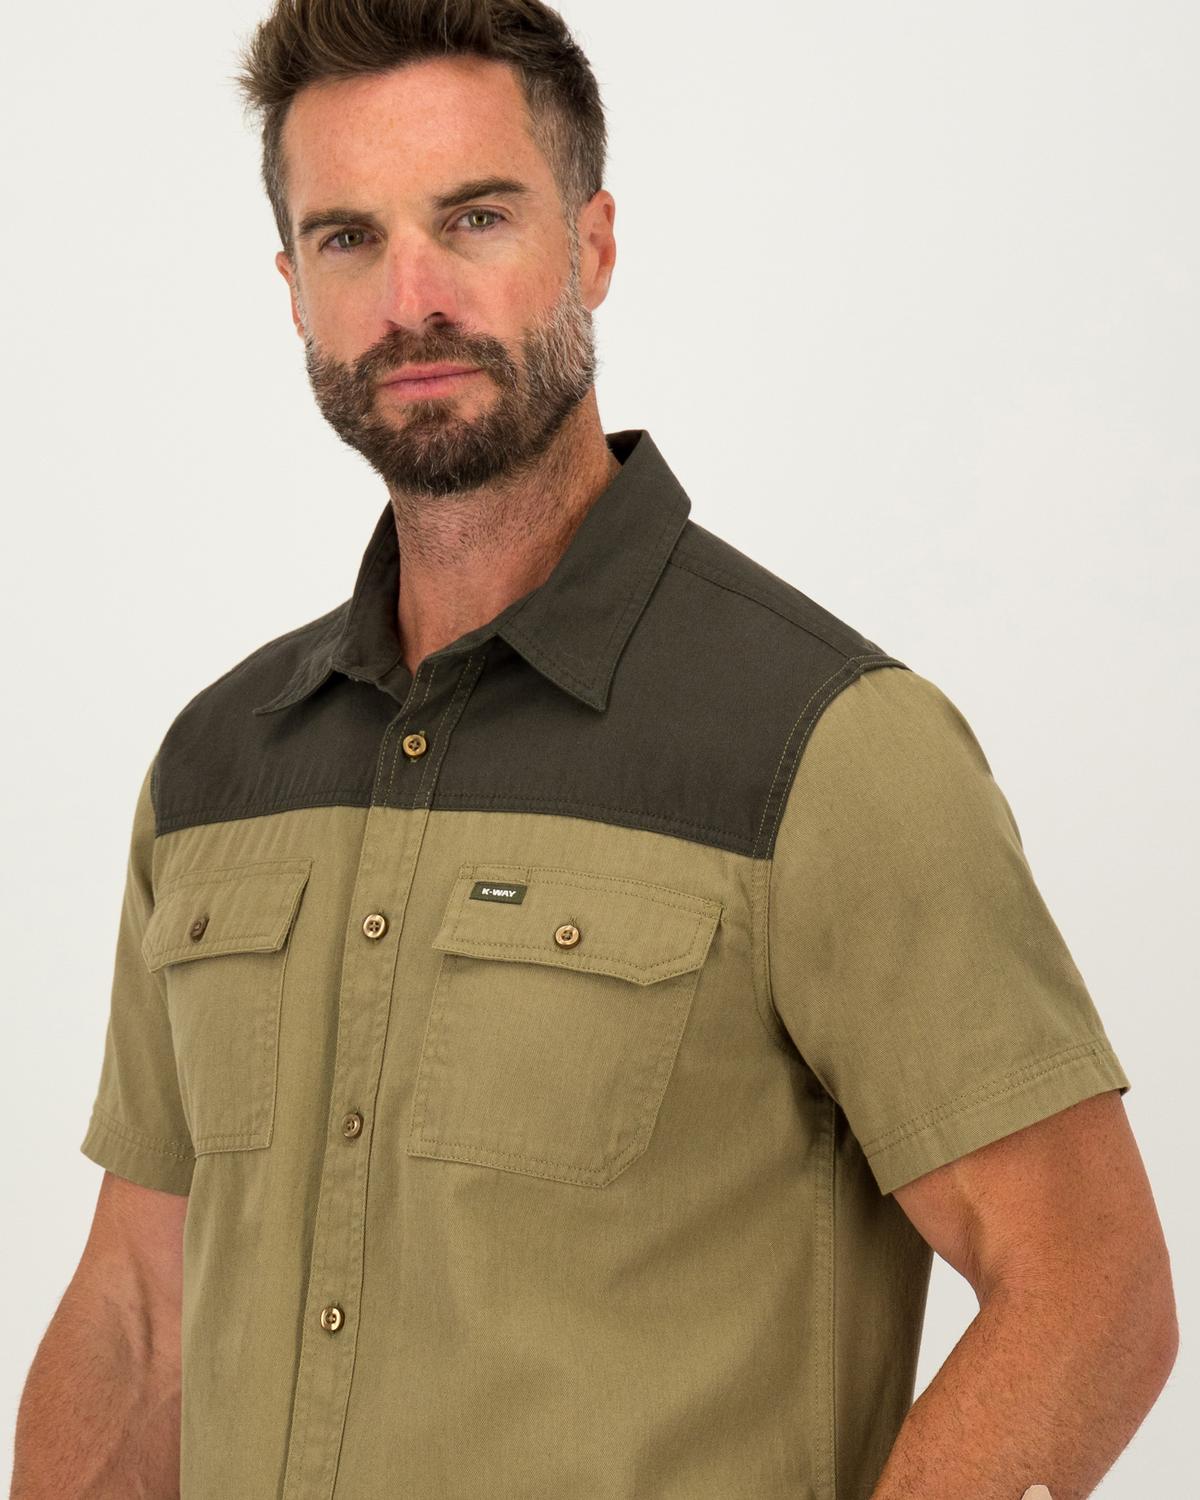 K-Way Elements Men's Safari Heavyweight Shirt -  Khaki